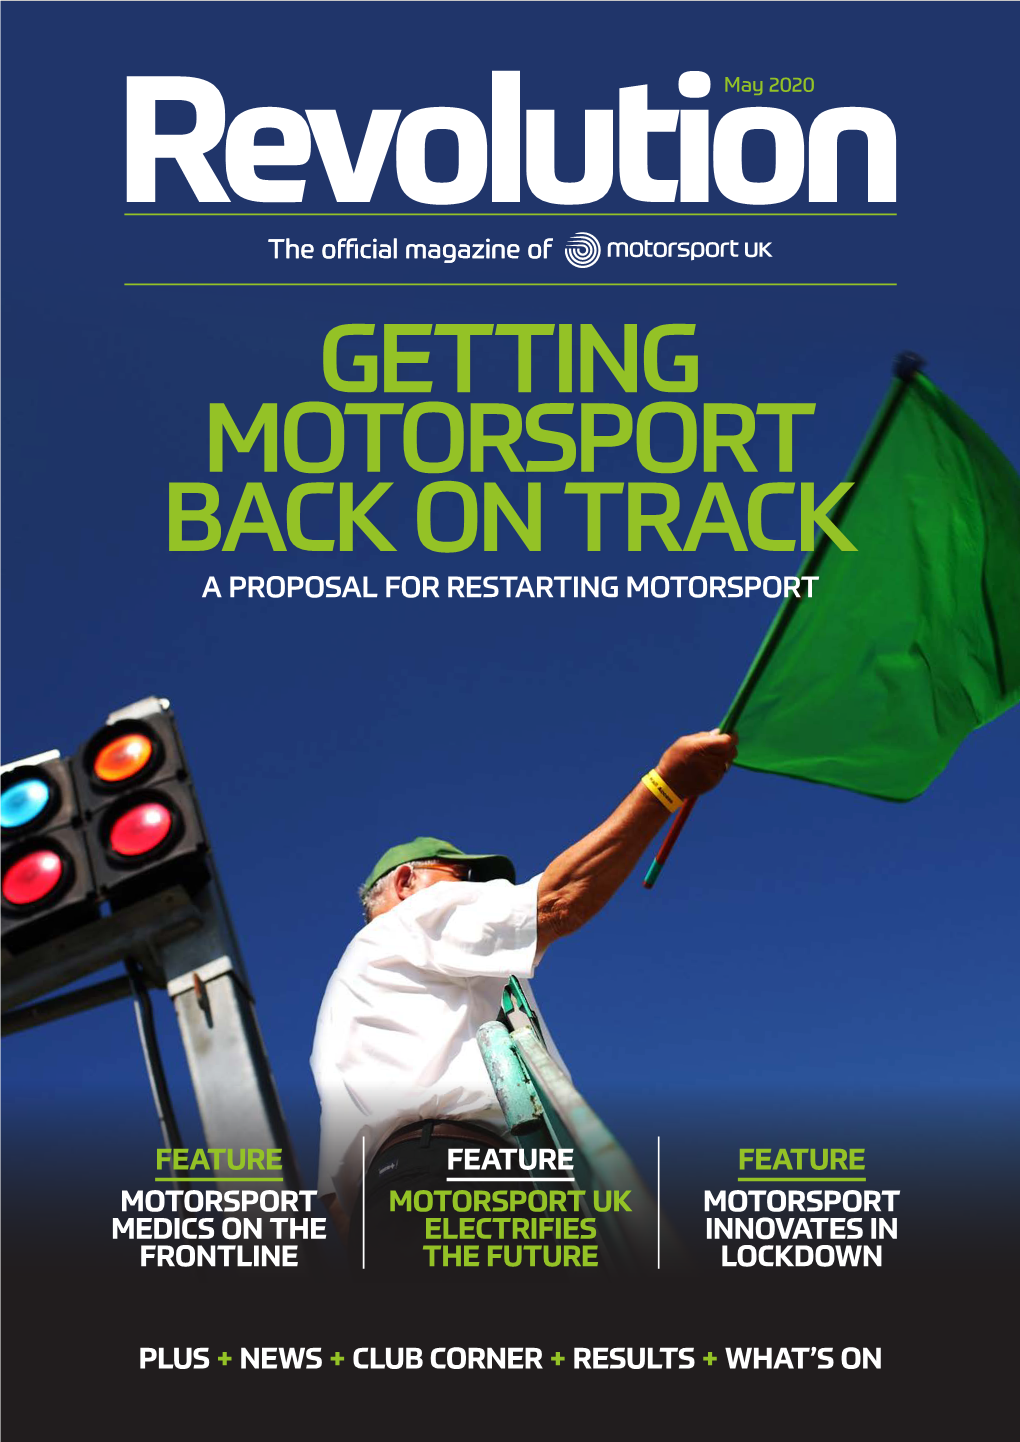 Getting Motorsport Back on Track a Proposal for Restarting Motorsport